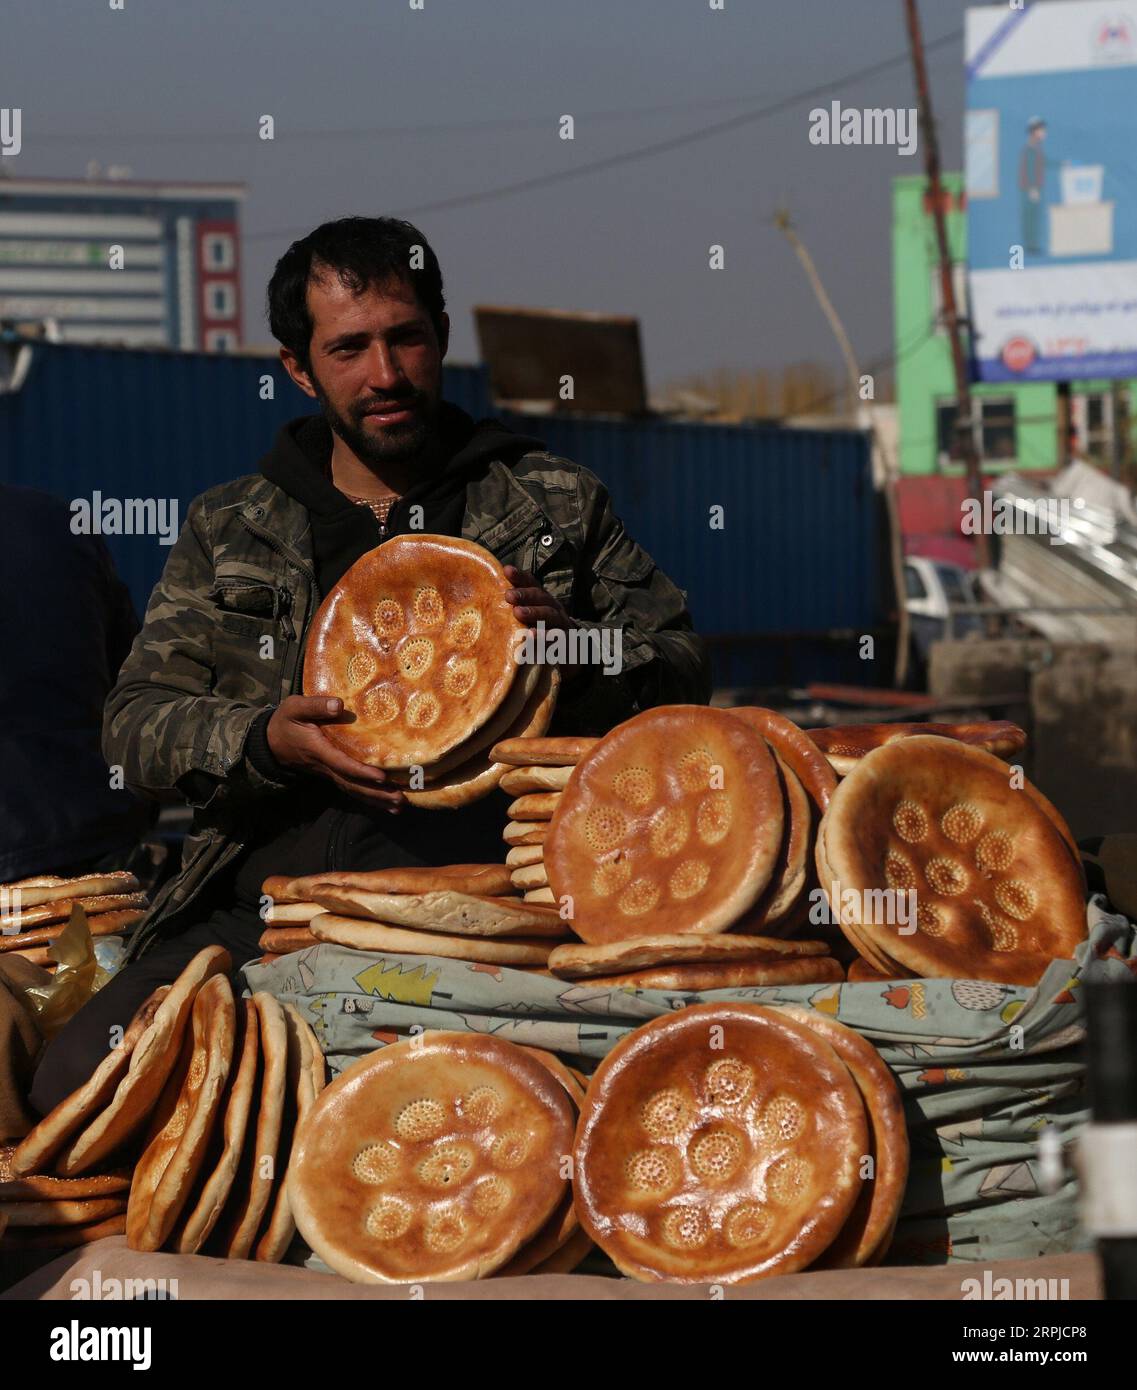 191205 -- KABUL, 5. Dezember 2019 -- ein afghanischer Verkäufer verkauft Lebensmittel auf einem Markt in Kabul, Hauptstadt Afghanistans, 5. Dezember 2019. Die Zahl der Afghanen, die sagen, dass sich das Land in die richtige Richtung bewegt, ist im Jahr 2019 im Vergleich zum Vorjahr gestiegen, so ein Bericht, der hier am Dienstag veröffentlicht wurde. Foto von /Xinhua AFGHANISTAN-KABUL-DAILY LIFE SayedxMominzadah PUBLICATIONxNOTxINxCHN Stockfoto